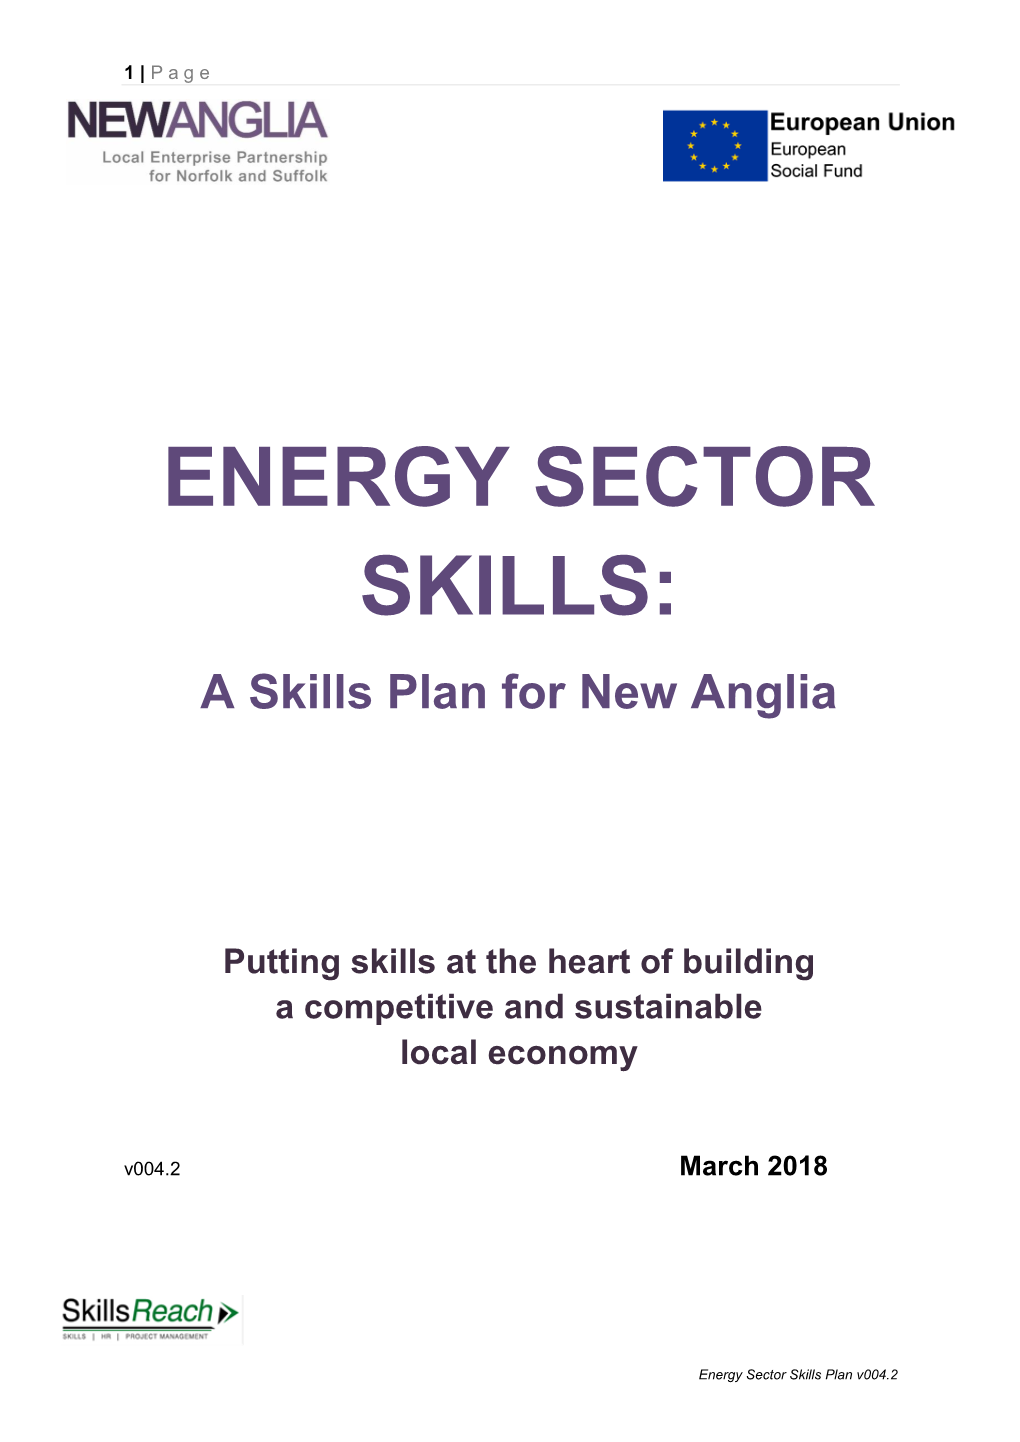 ENERGY SECTOR SKILLS: a Skills Plan for New Anglia